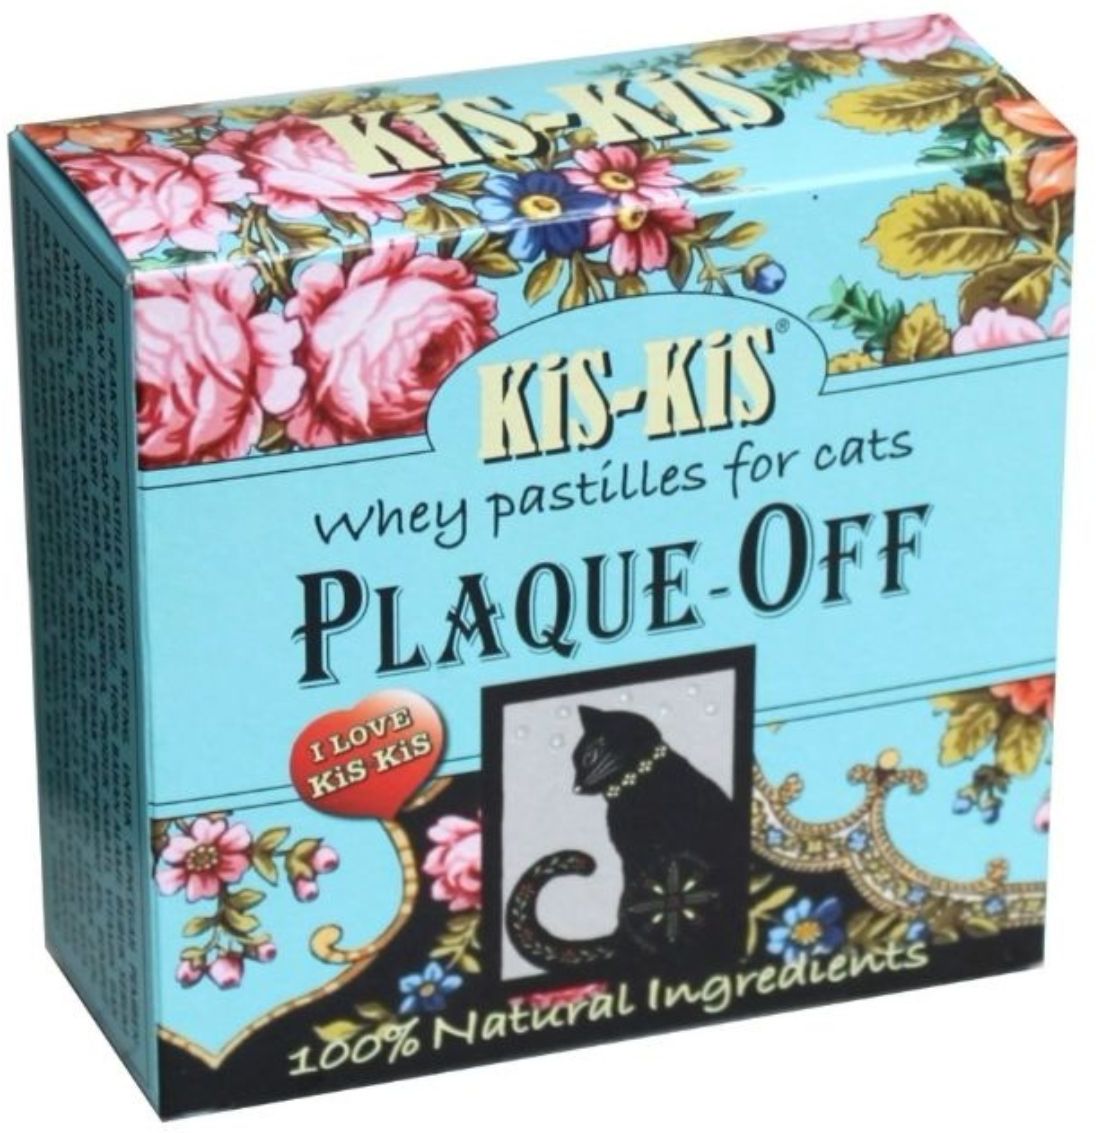 KiS-KiS Plaque-off pastile de zer pentru pisici - Împotriva plăcii bacteriene și a respirației urât mirositoare